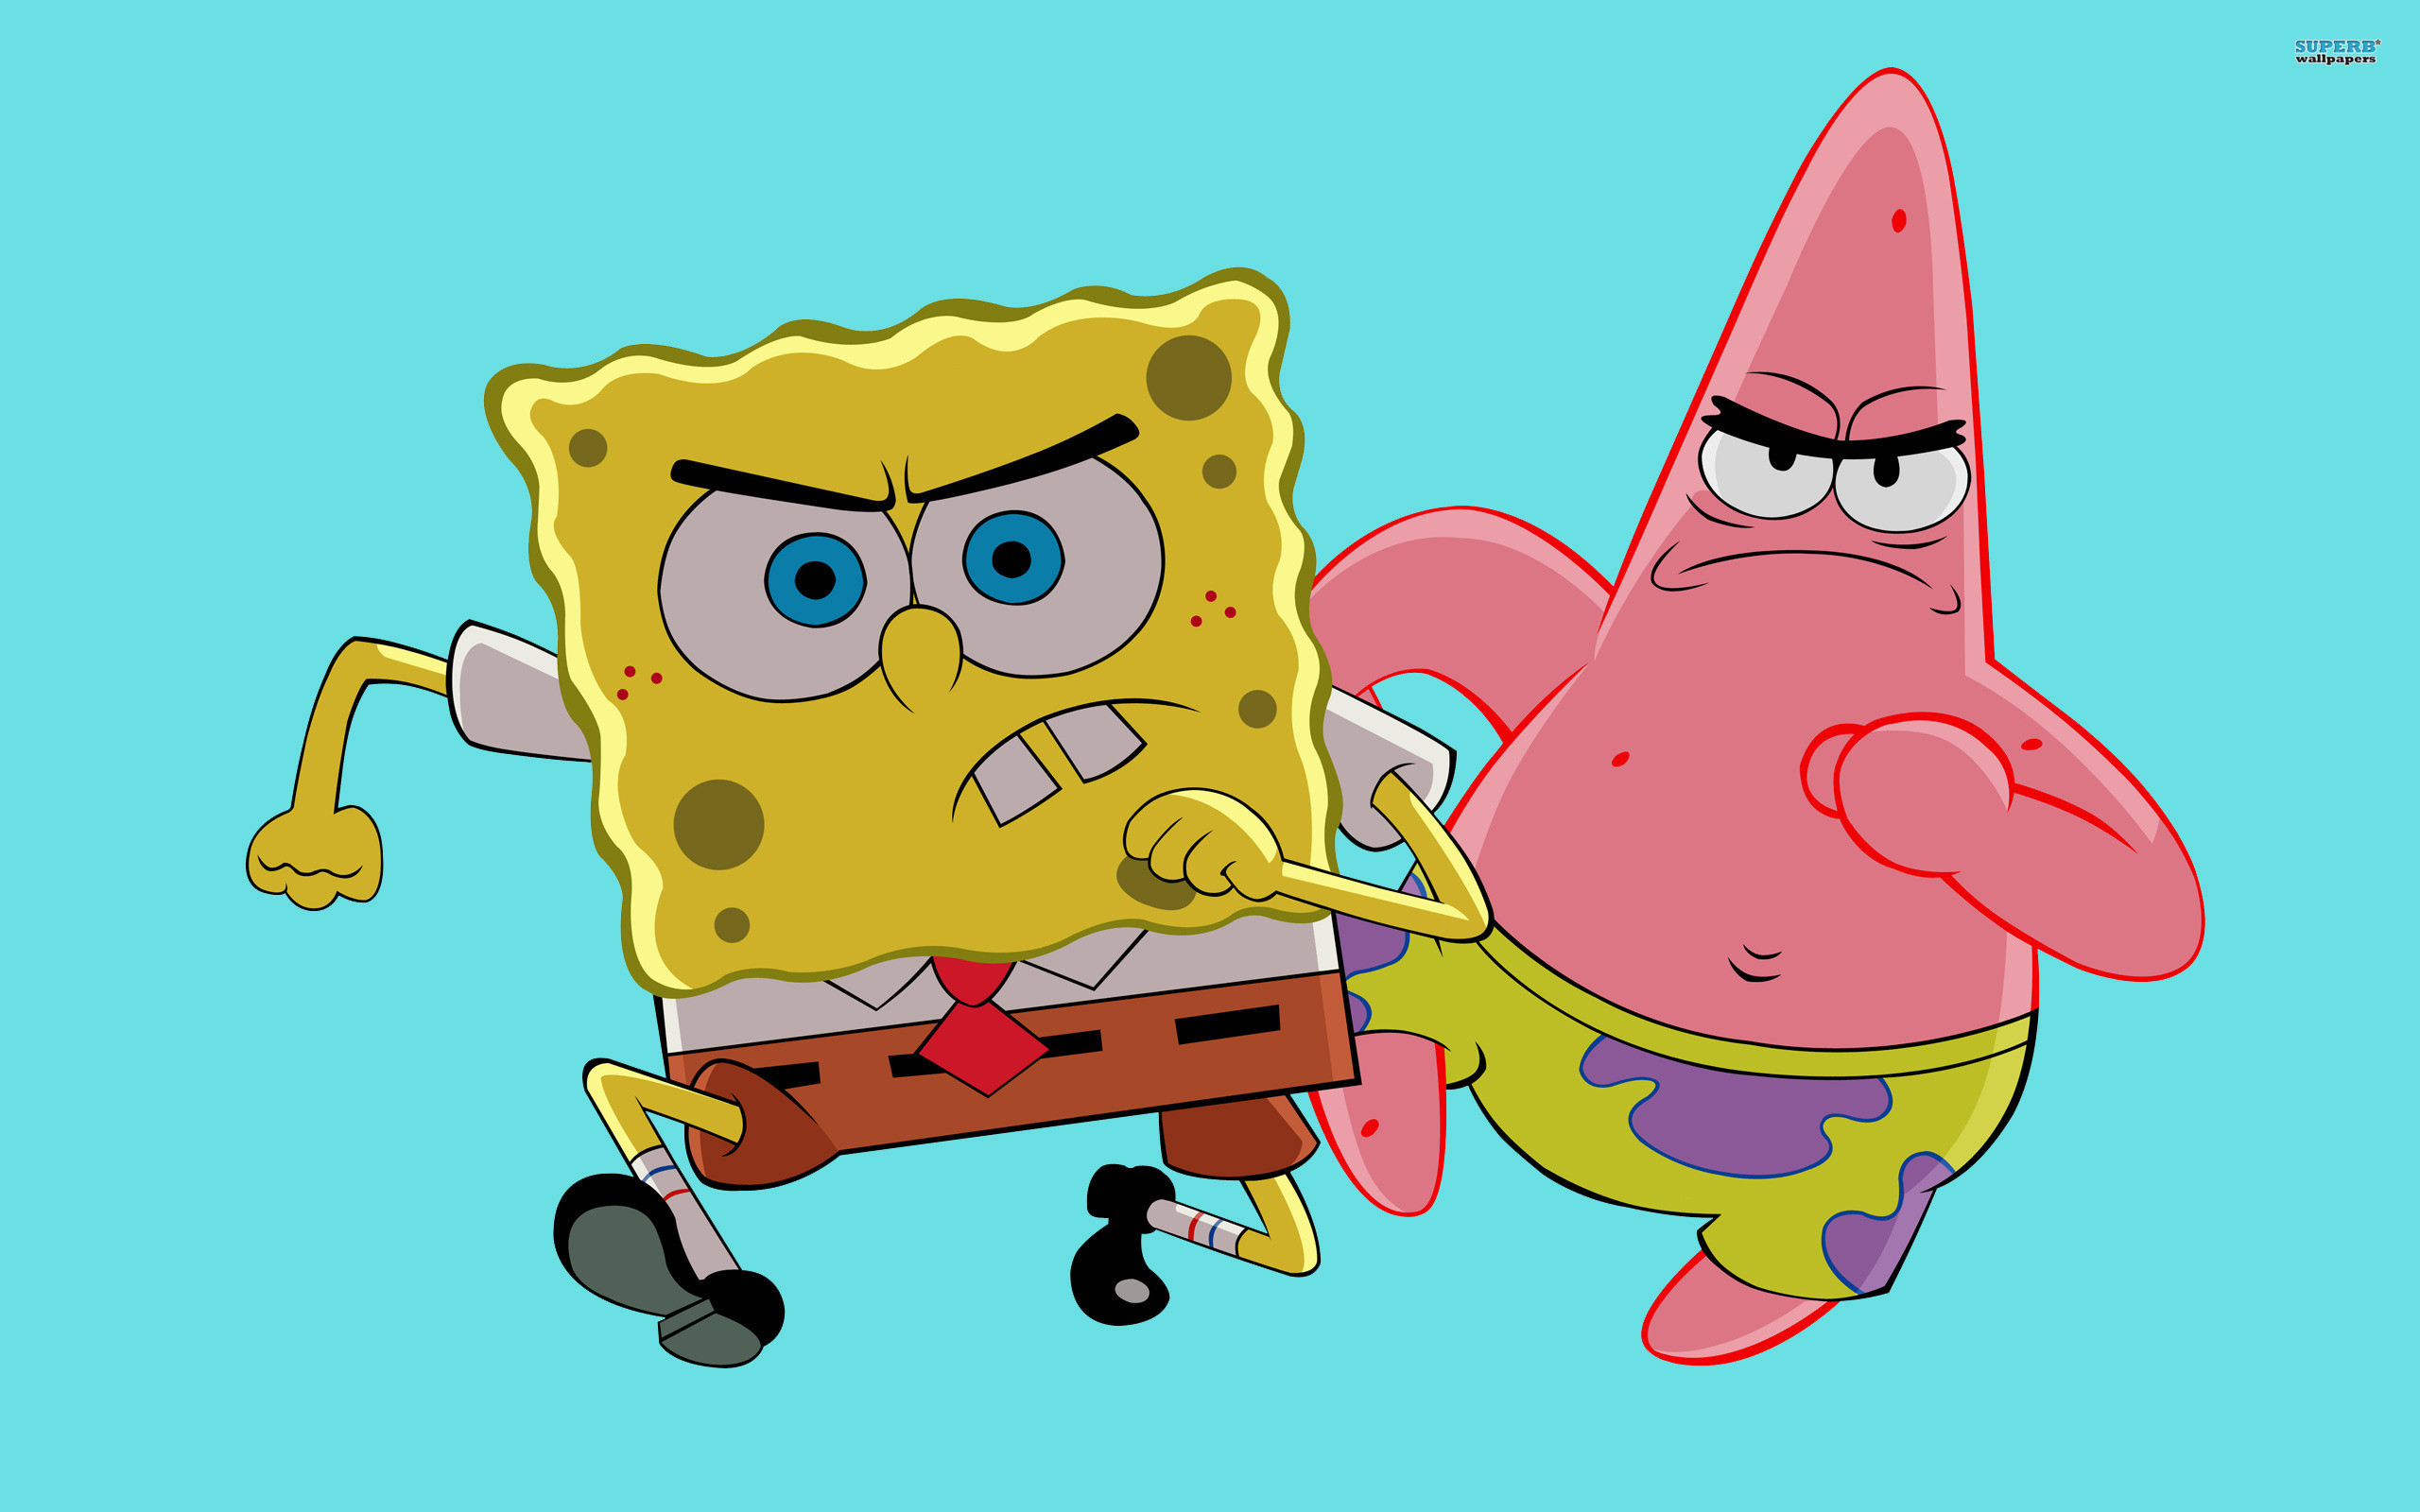 Spongebob And Patrick Wallpaper Image